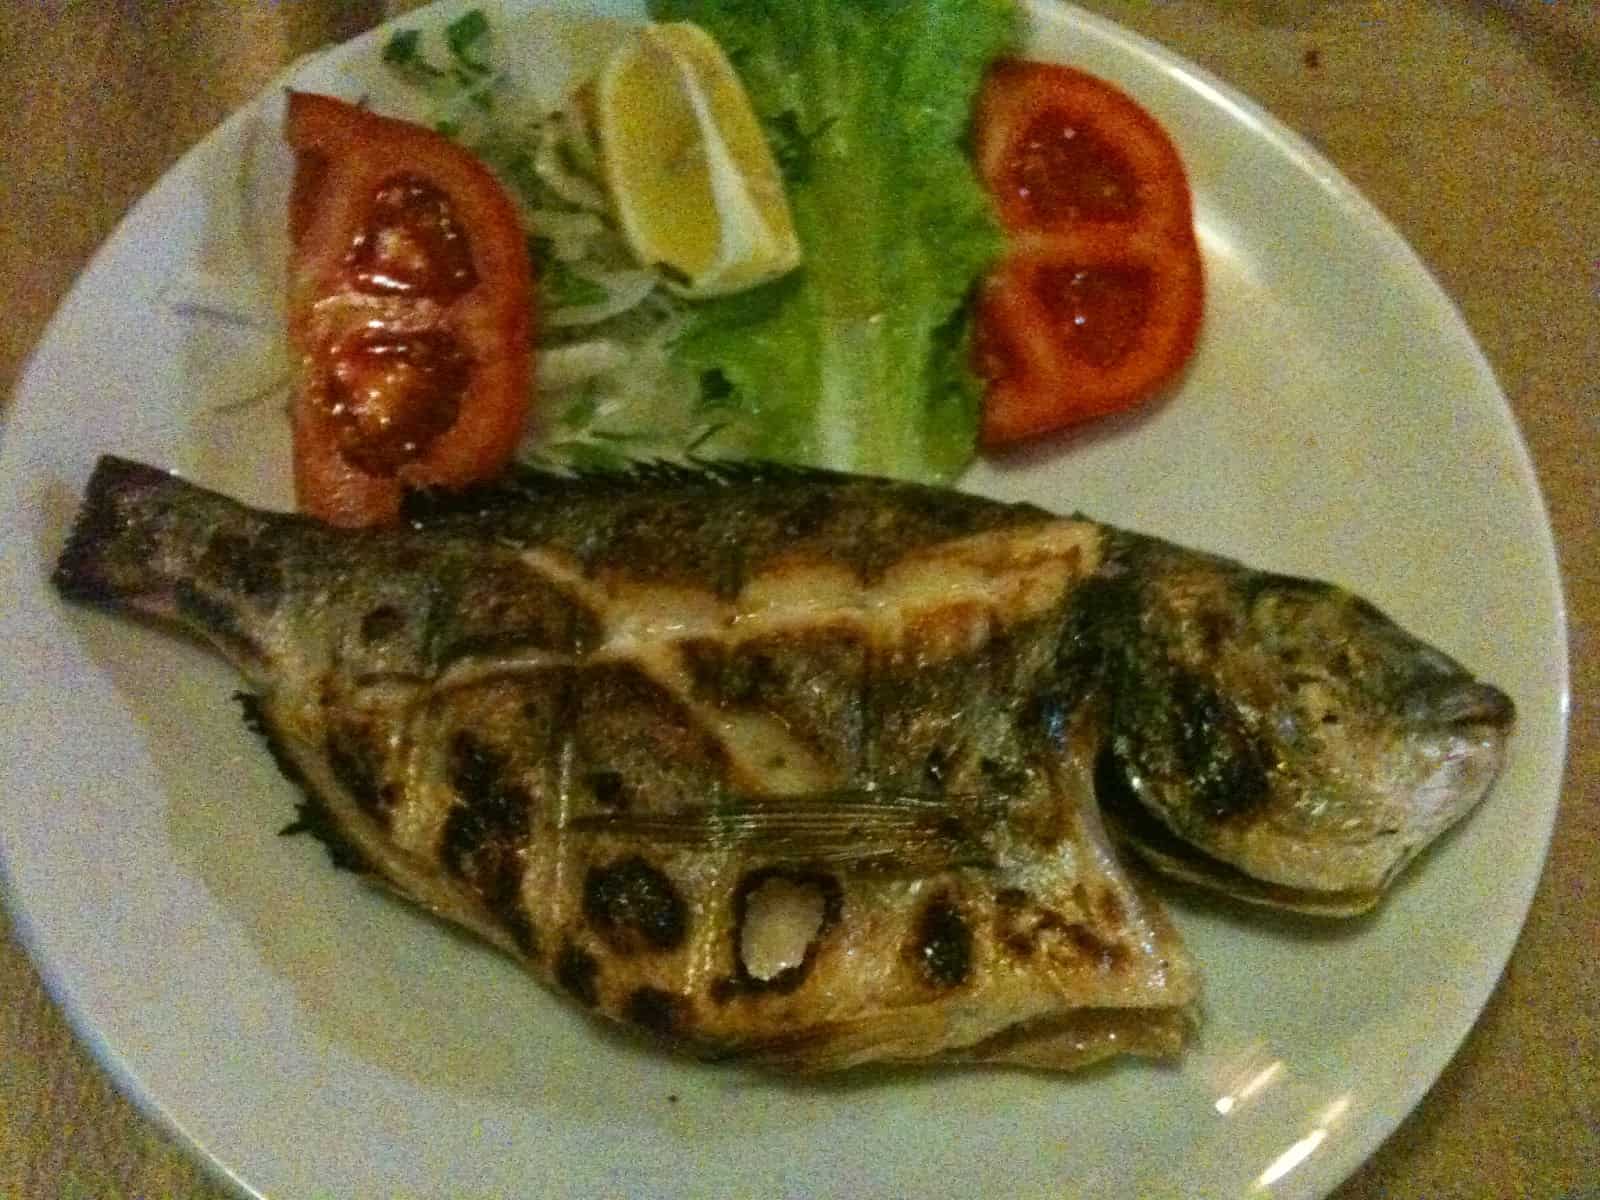 Çupra dinner in Sinop, Turkey